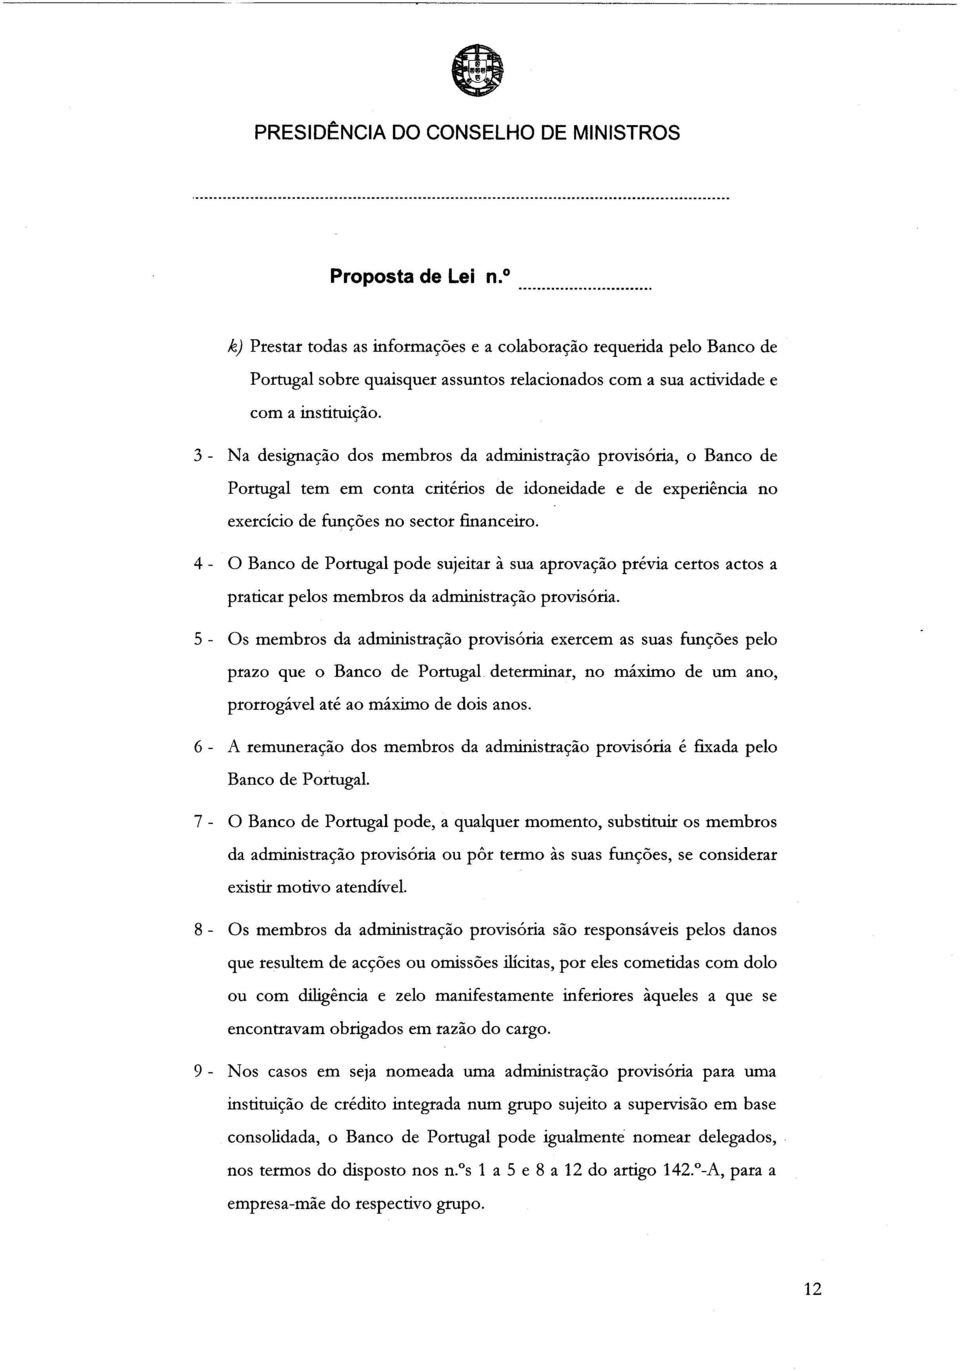 4 - O Banco de Portugal pode sujeitar à sua aprovação prévia certos actos a praticar pelos membros da administração provisória.